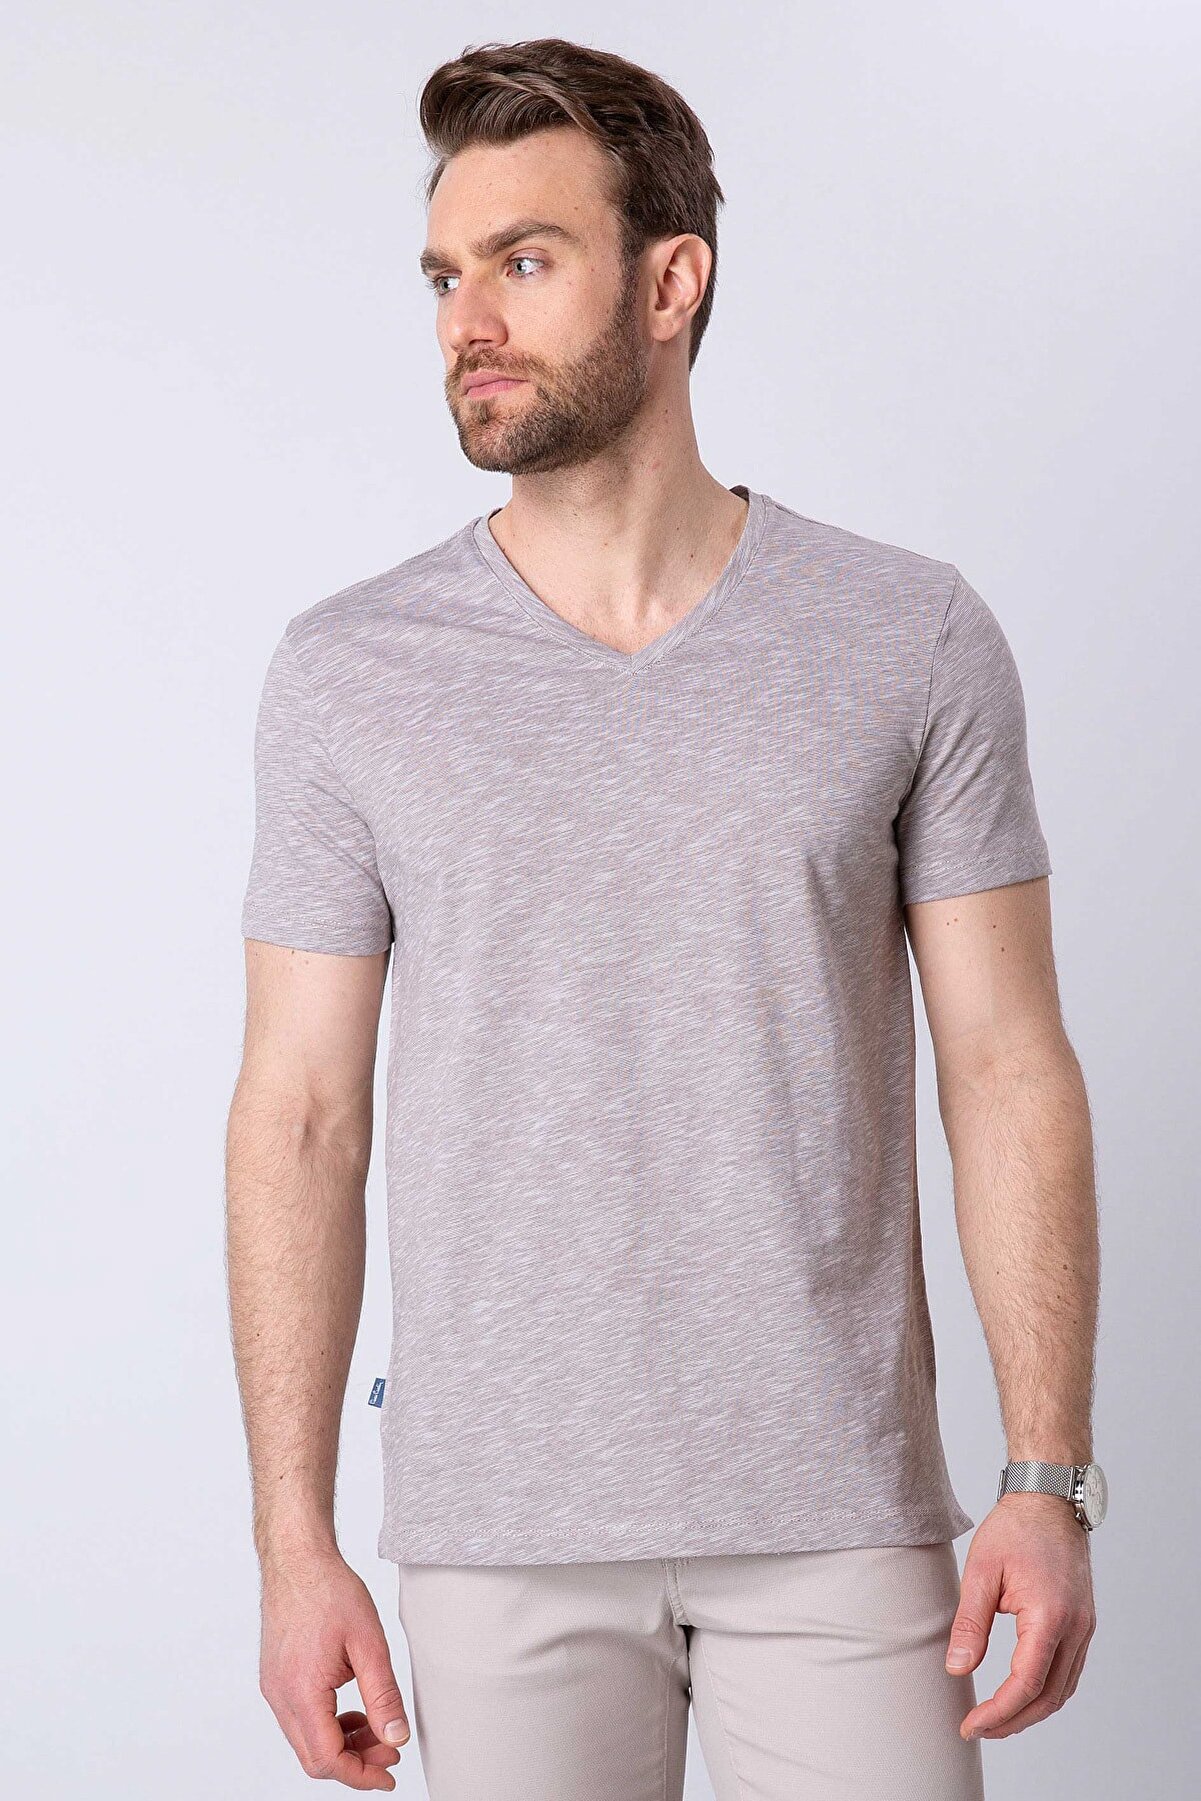 Pierre Cardin Erkek Vizon Slim Fit V Yaka T-Shirt